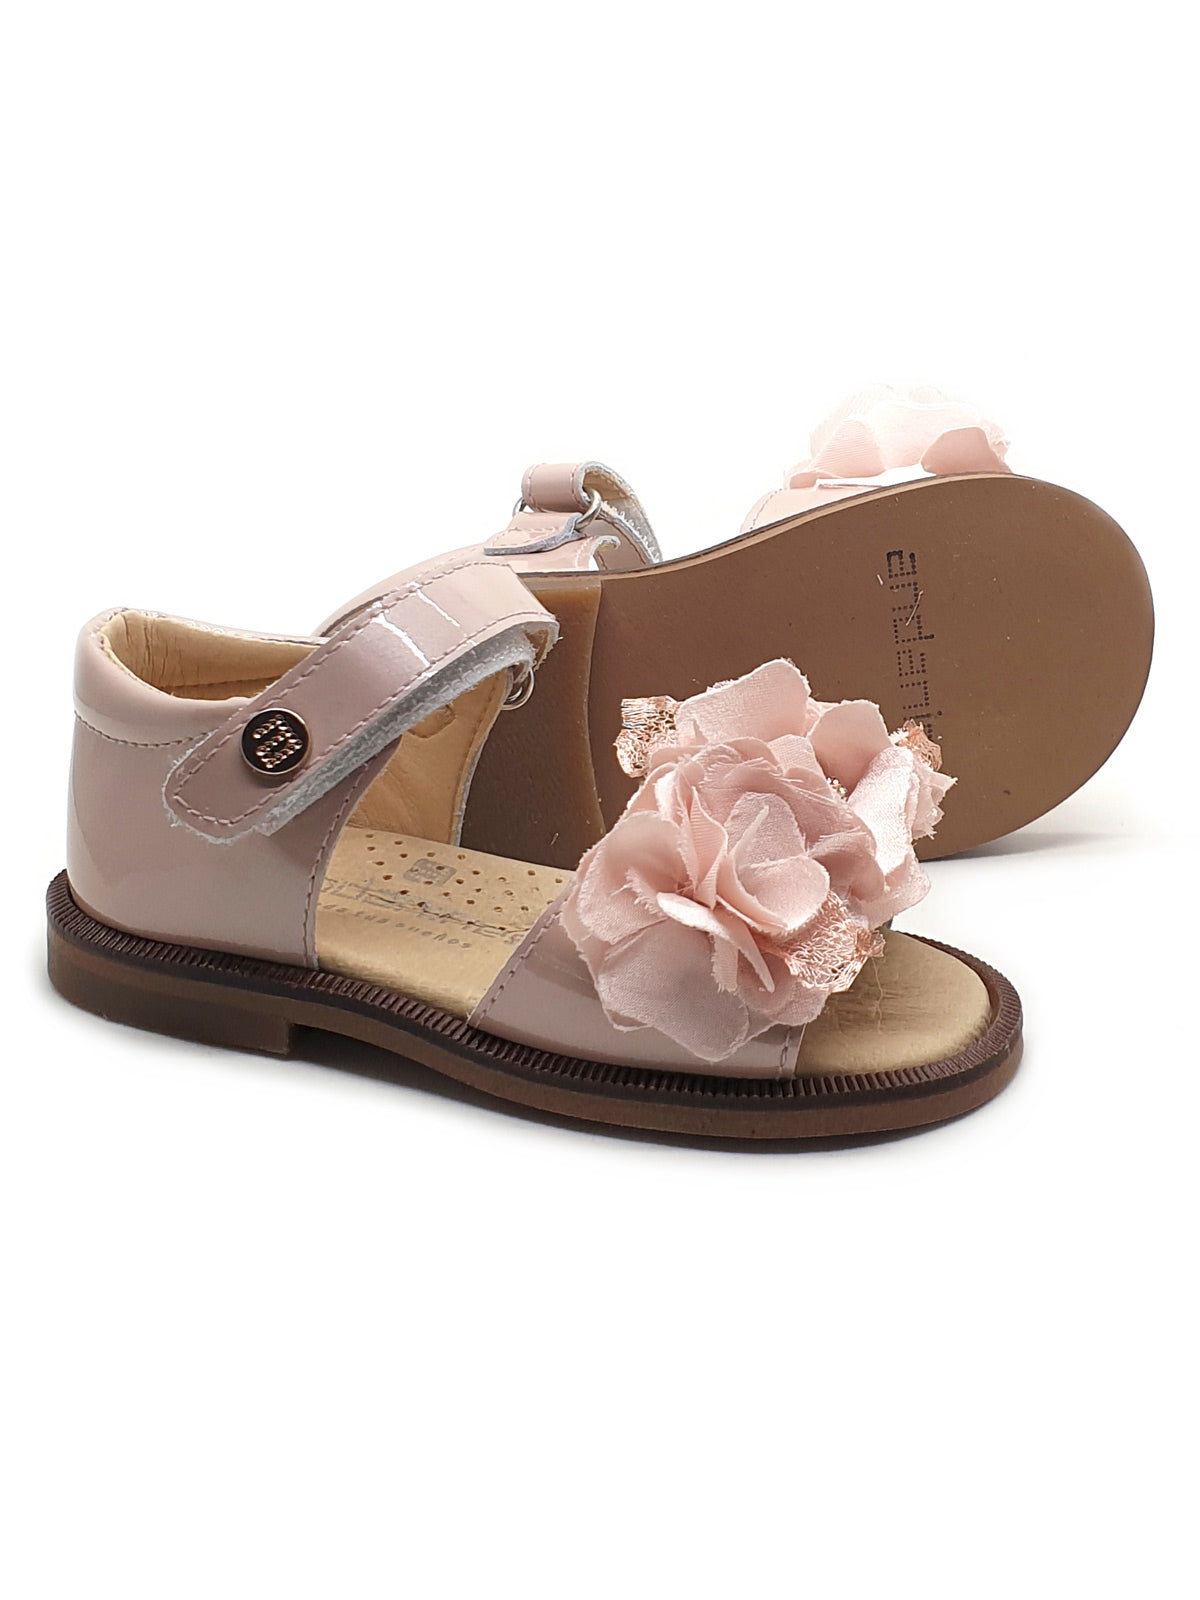 Andanines floral-appliqué leather sandals